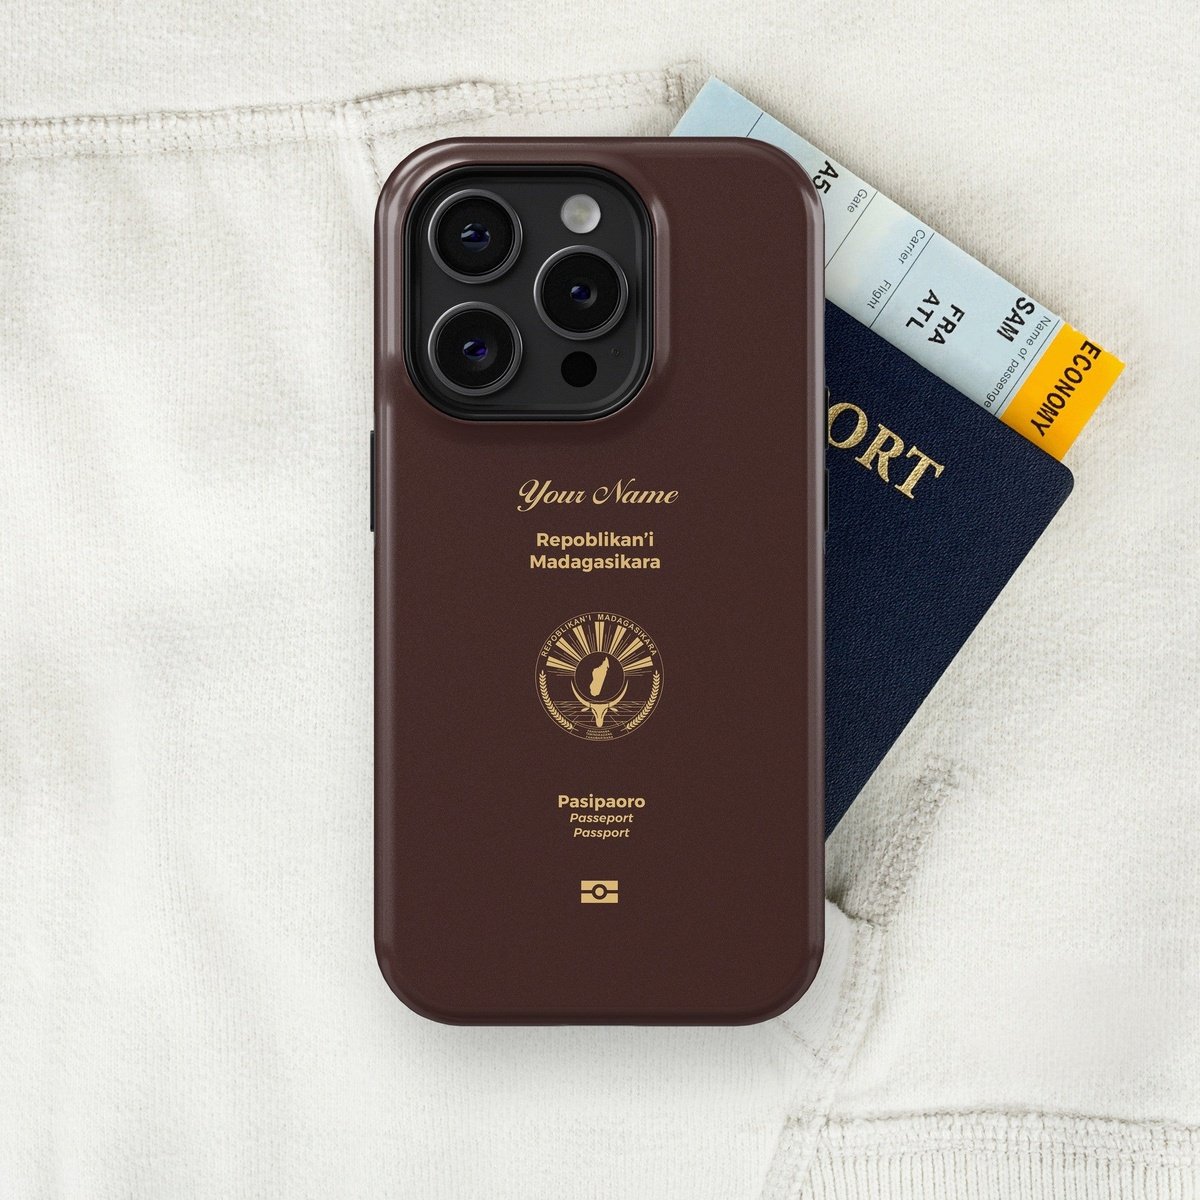 Madagascar Passport - iPhone Case Tough Case